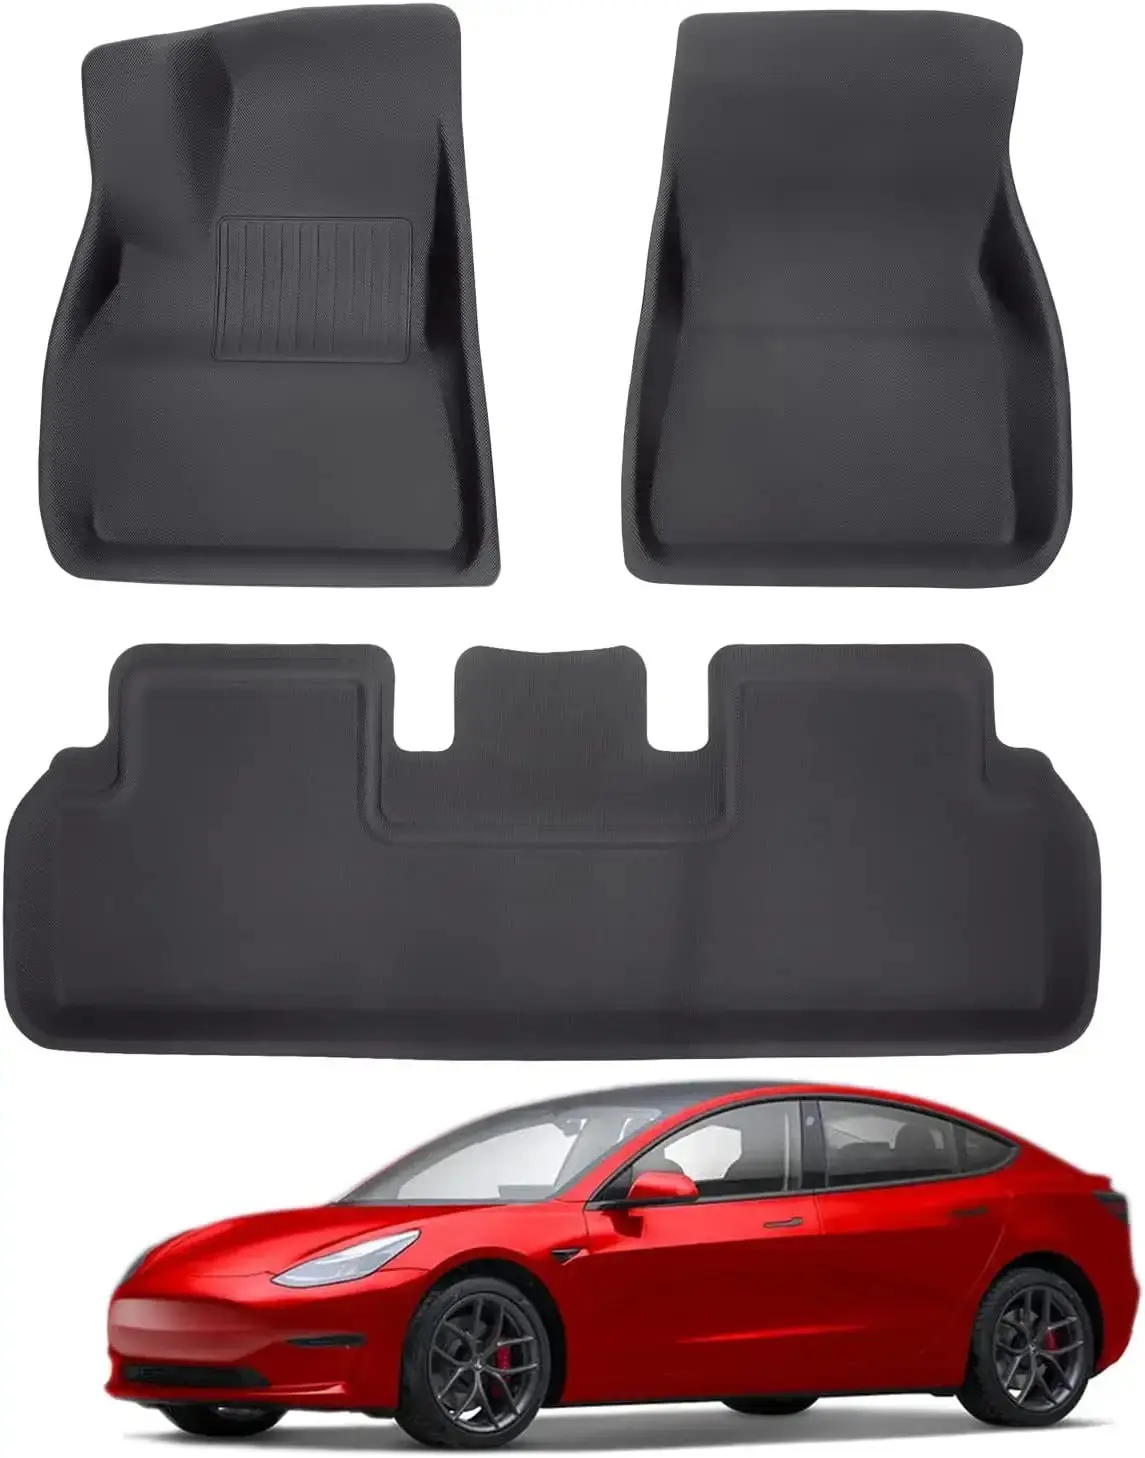 Tesla Auto Tapete de Carro Atualizado Preço de Fábrica Forros de Piso Impermeáveis liso XPE Preto 3 Peças Tapete para Tesla Modelo 3